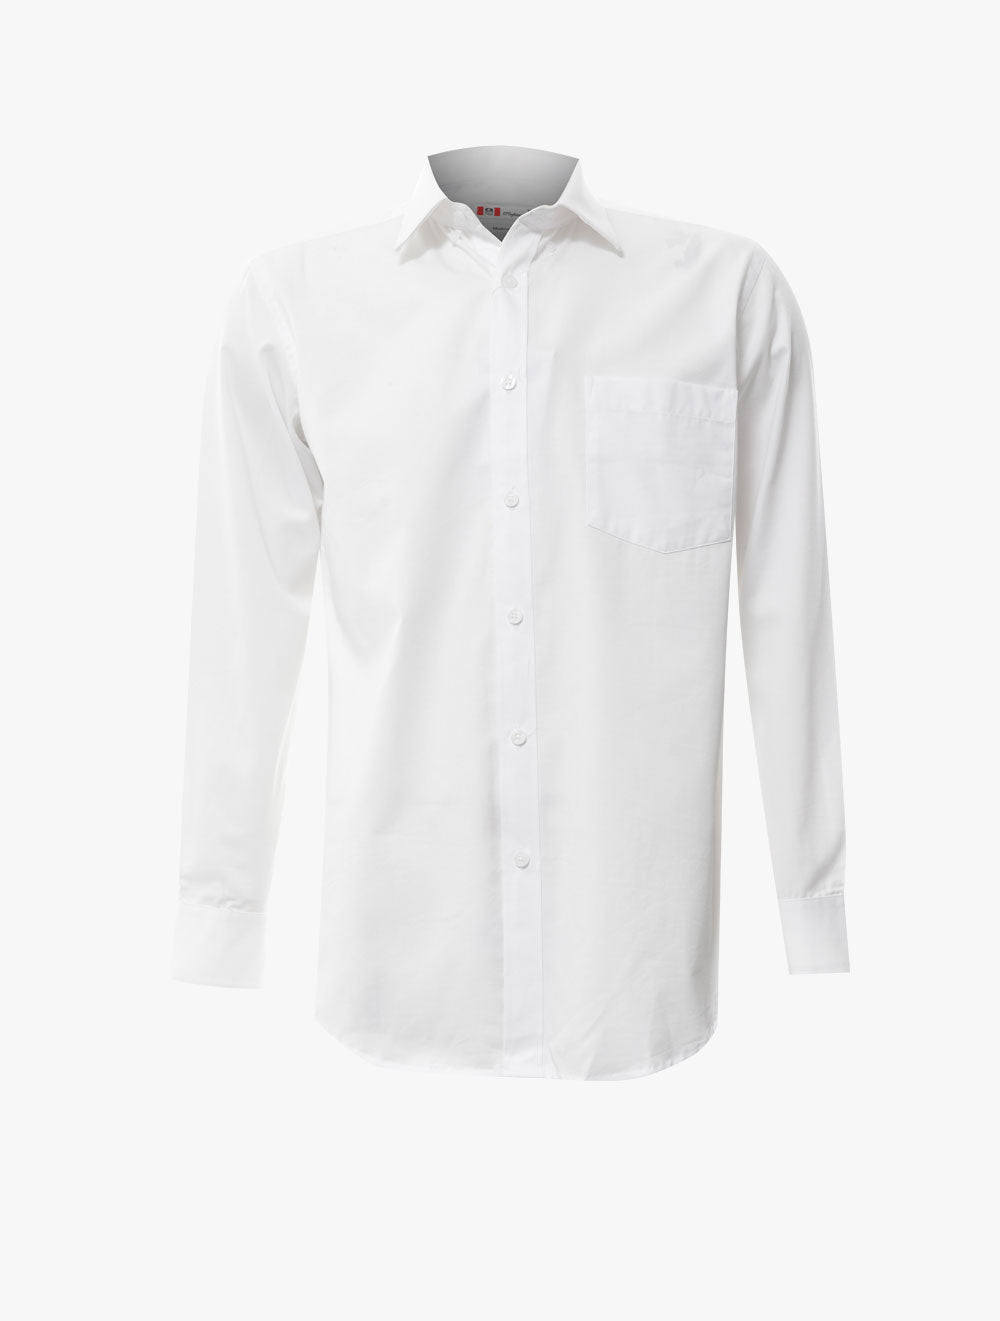 GQ
Modern Fit Long Sleeve Shirt - 2723132